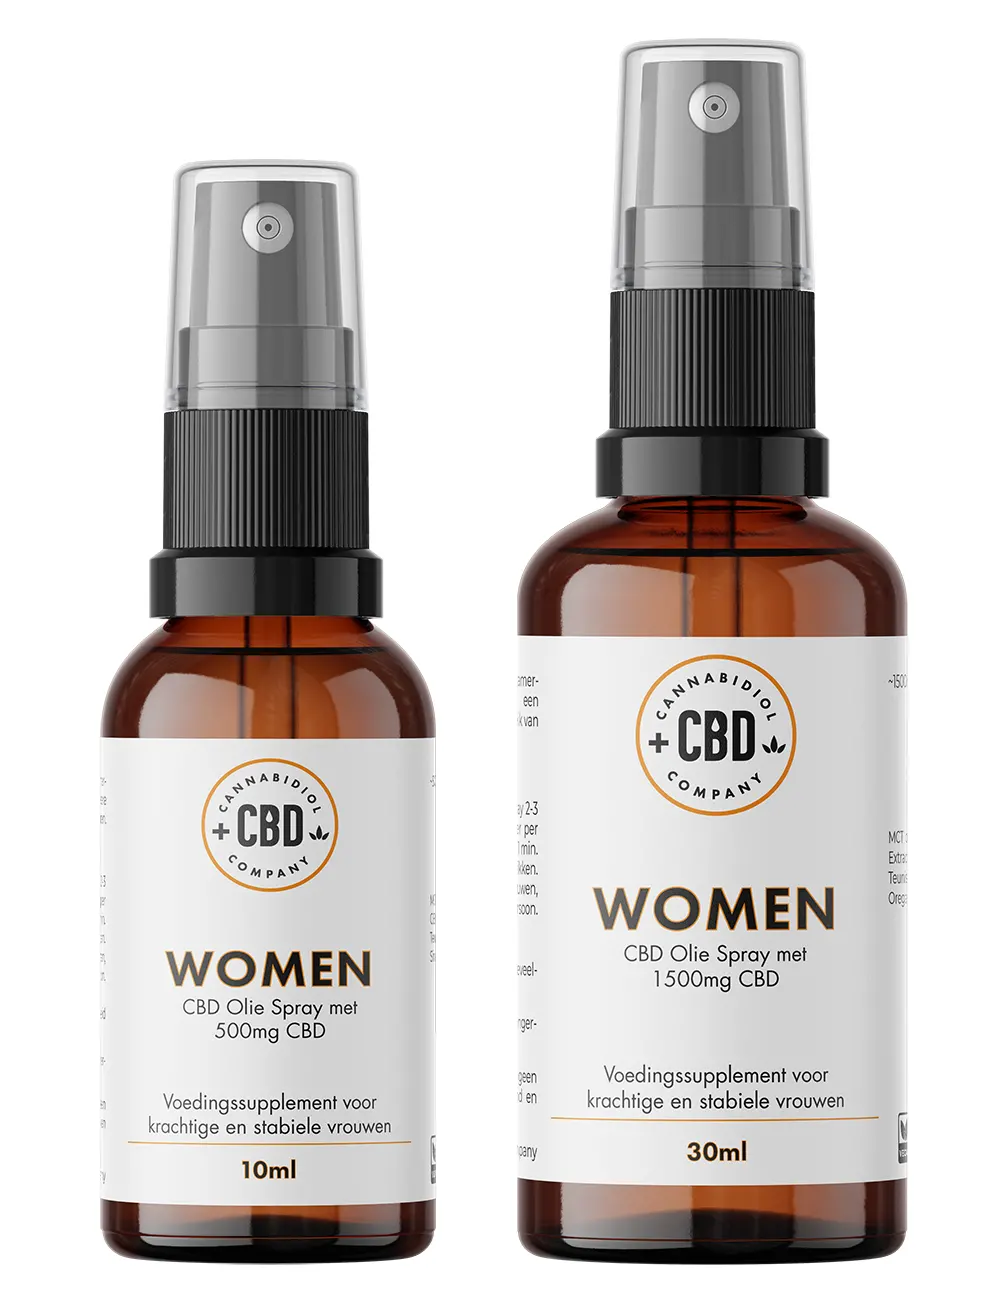 Woman CBD Spray, cbd supplement voor vrouwen